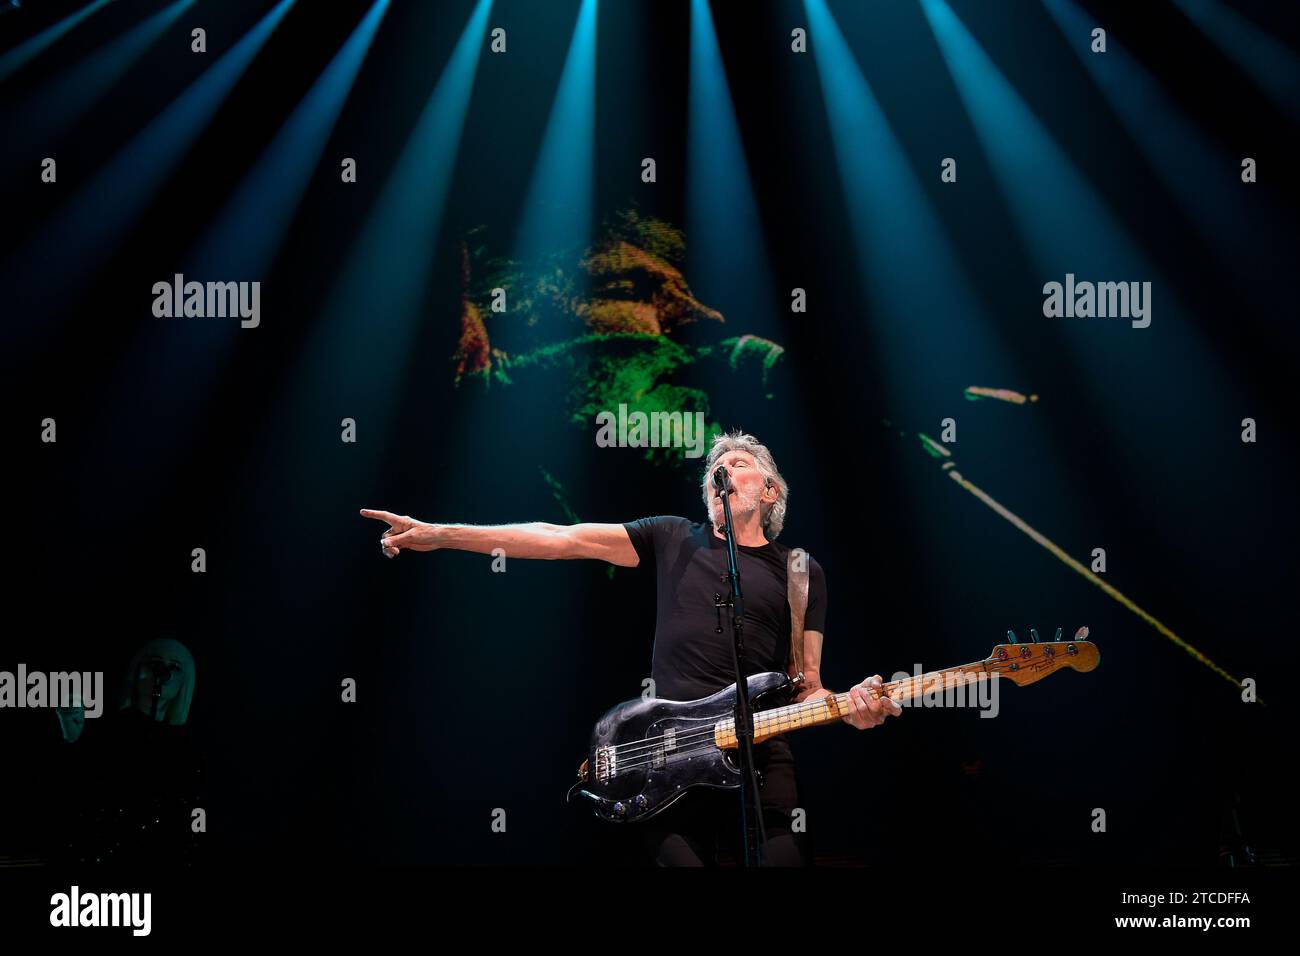 Barcelone, 04/13/2018. Concert de Roger Waters, compositeur de Pink Loyd. Photo : Inés Baucells Archdc. Crédit : Album / Archivo ABC / Inés Baucells Banque D'Images